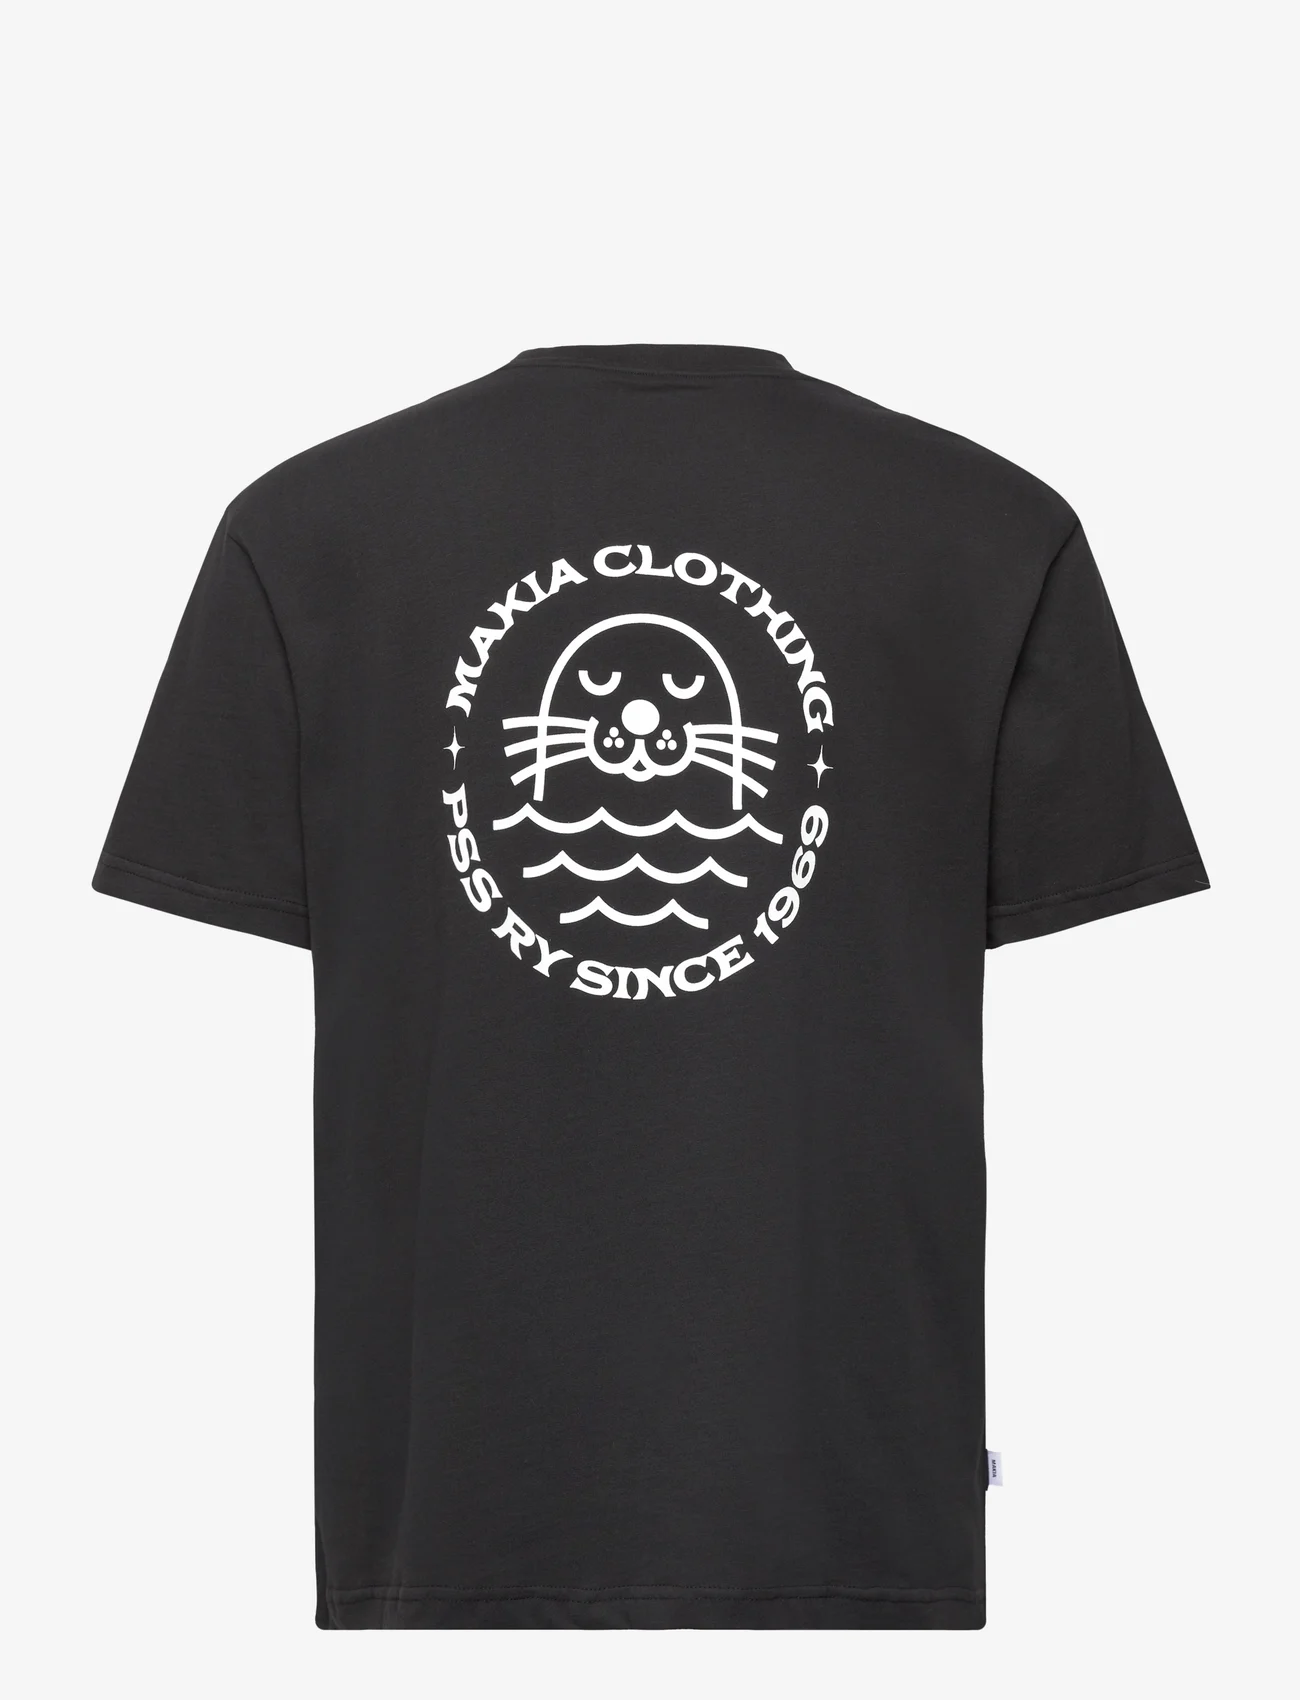 Makia - Elvsö T-shirt - mažiausios kainos - black - 1